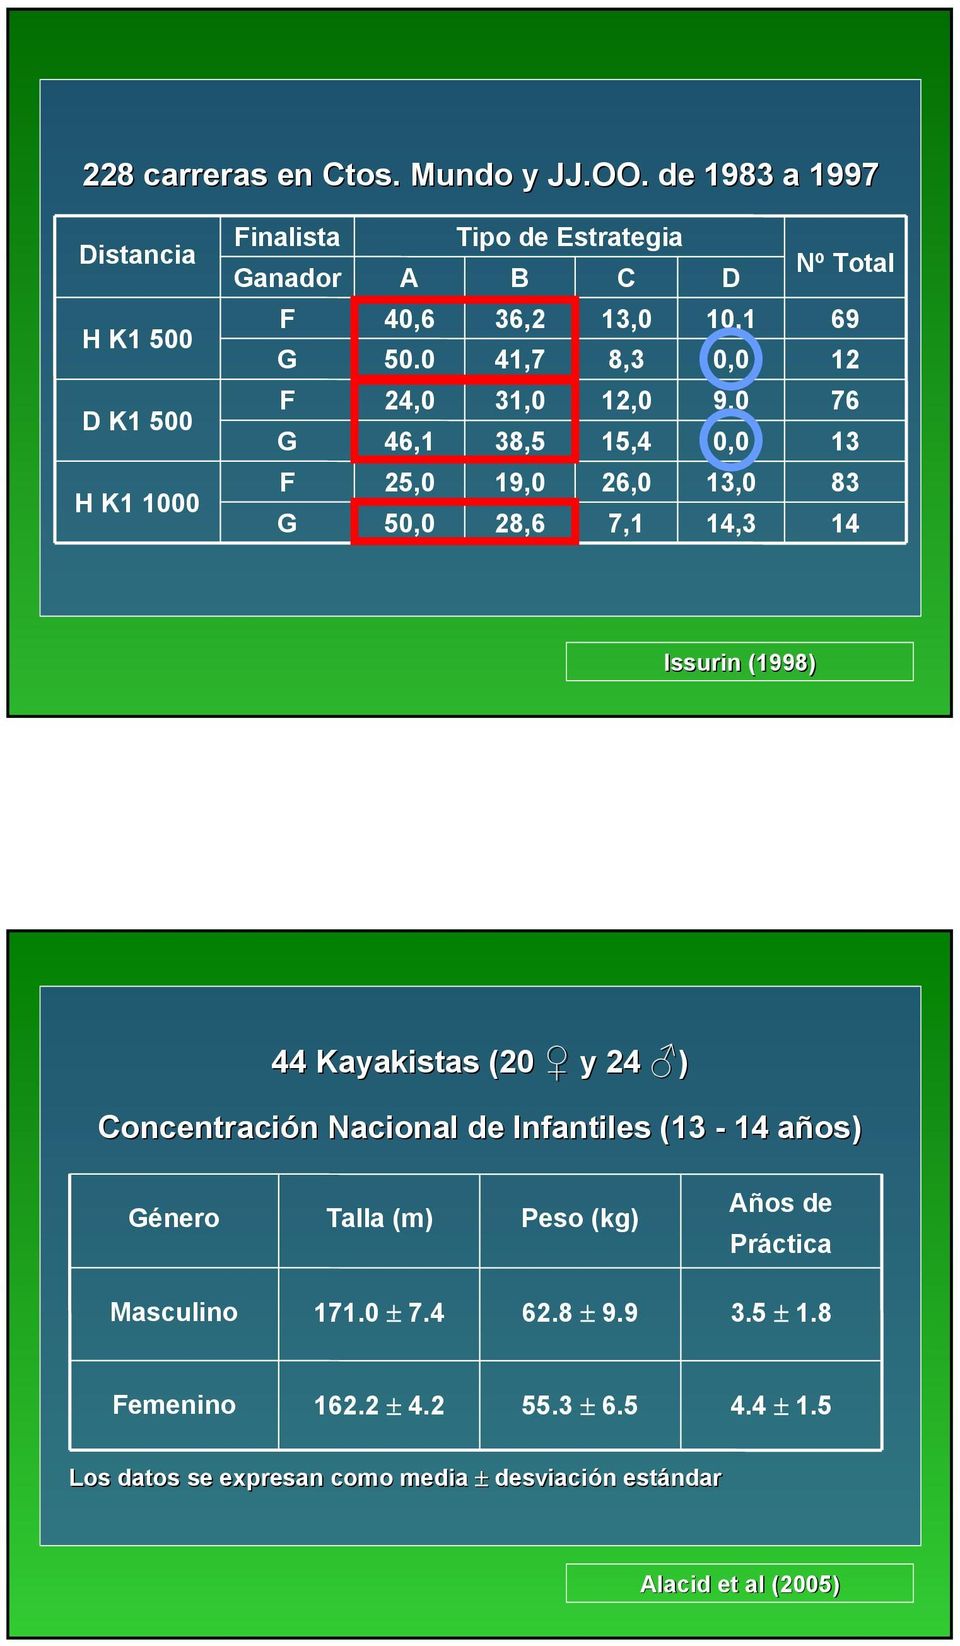 76 13 83 14 Issurin (1998) 44 Kayakistas (20 y 24 ) Concentración n Nacional de Infantiles (13-14 años) a Género Talla (m) Peso (kg) Años de